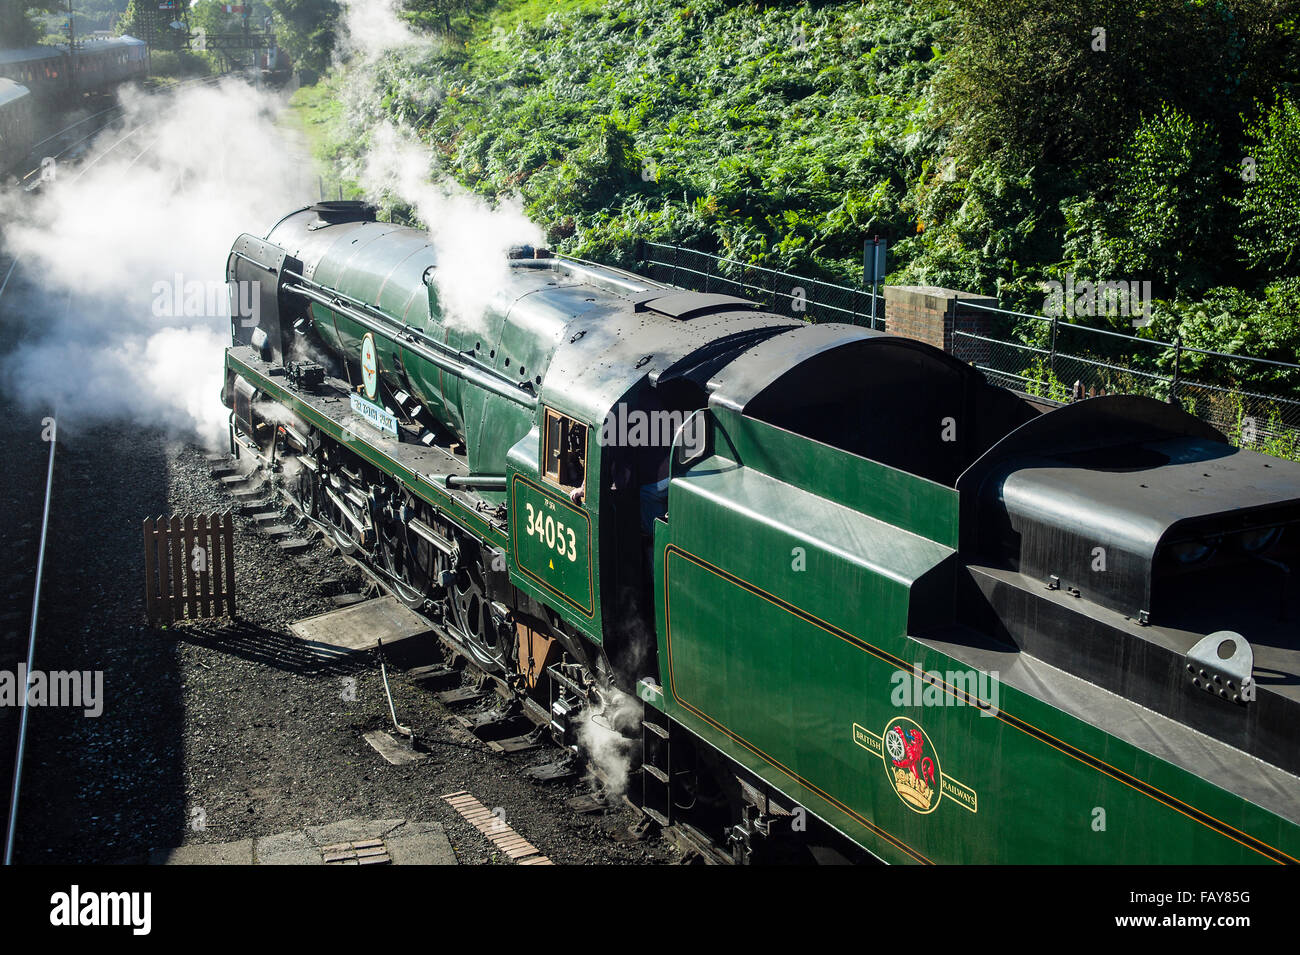 Restaurés et préservés travaillant machine à vapeur sur la Severn Valley Railway à Bridgnorth Shropshire UK Banque D'Images